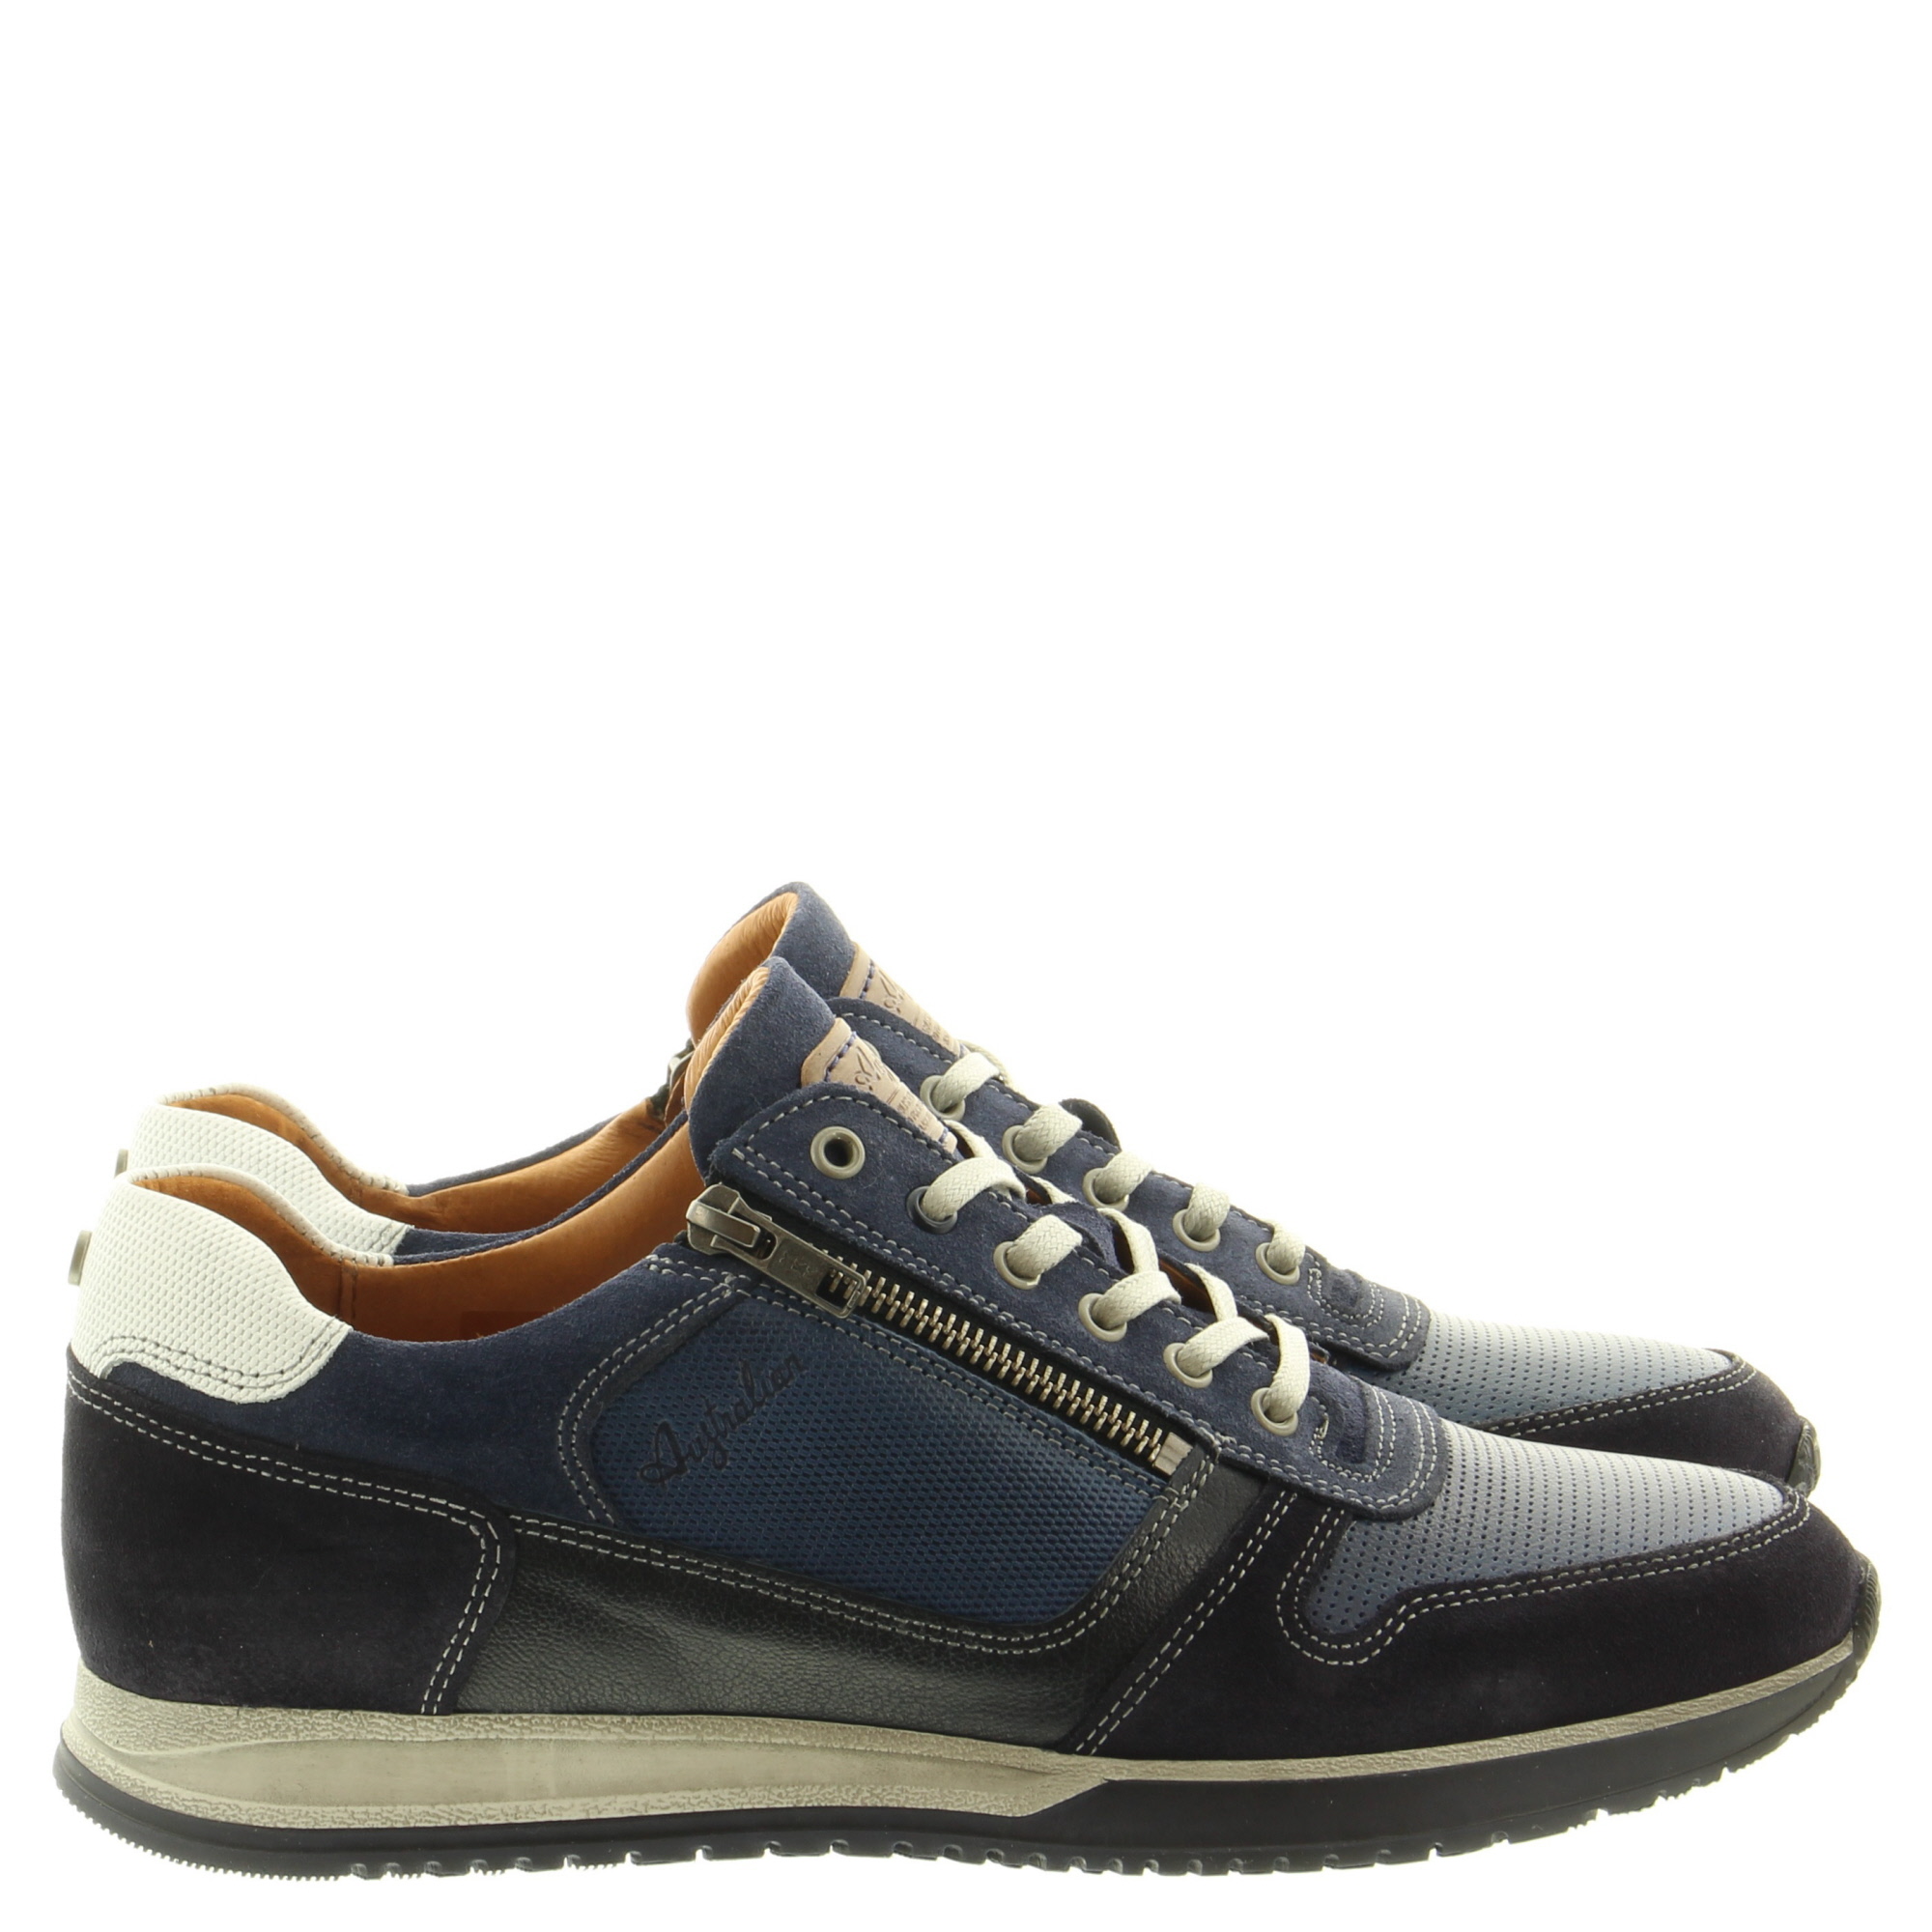 Australian Footwear Browning 15.1473.01 S00 Blue